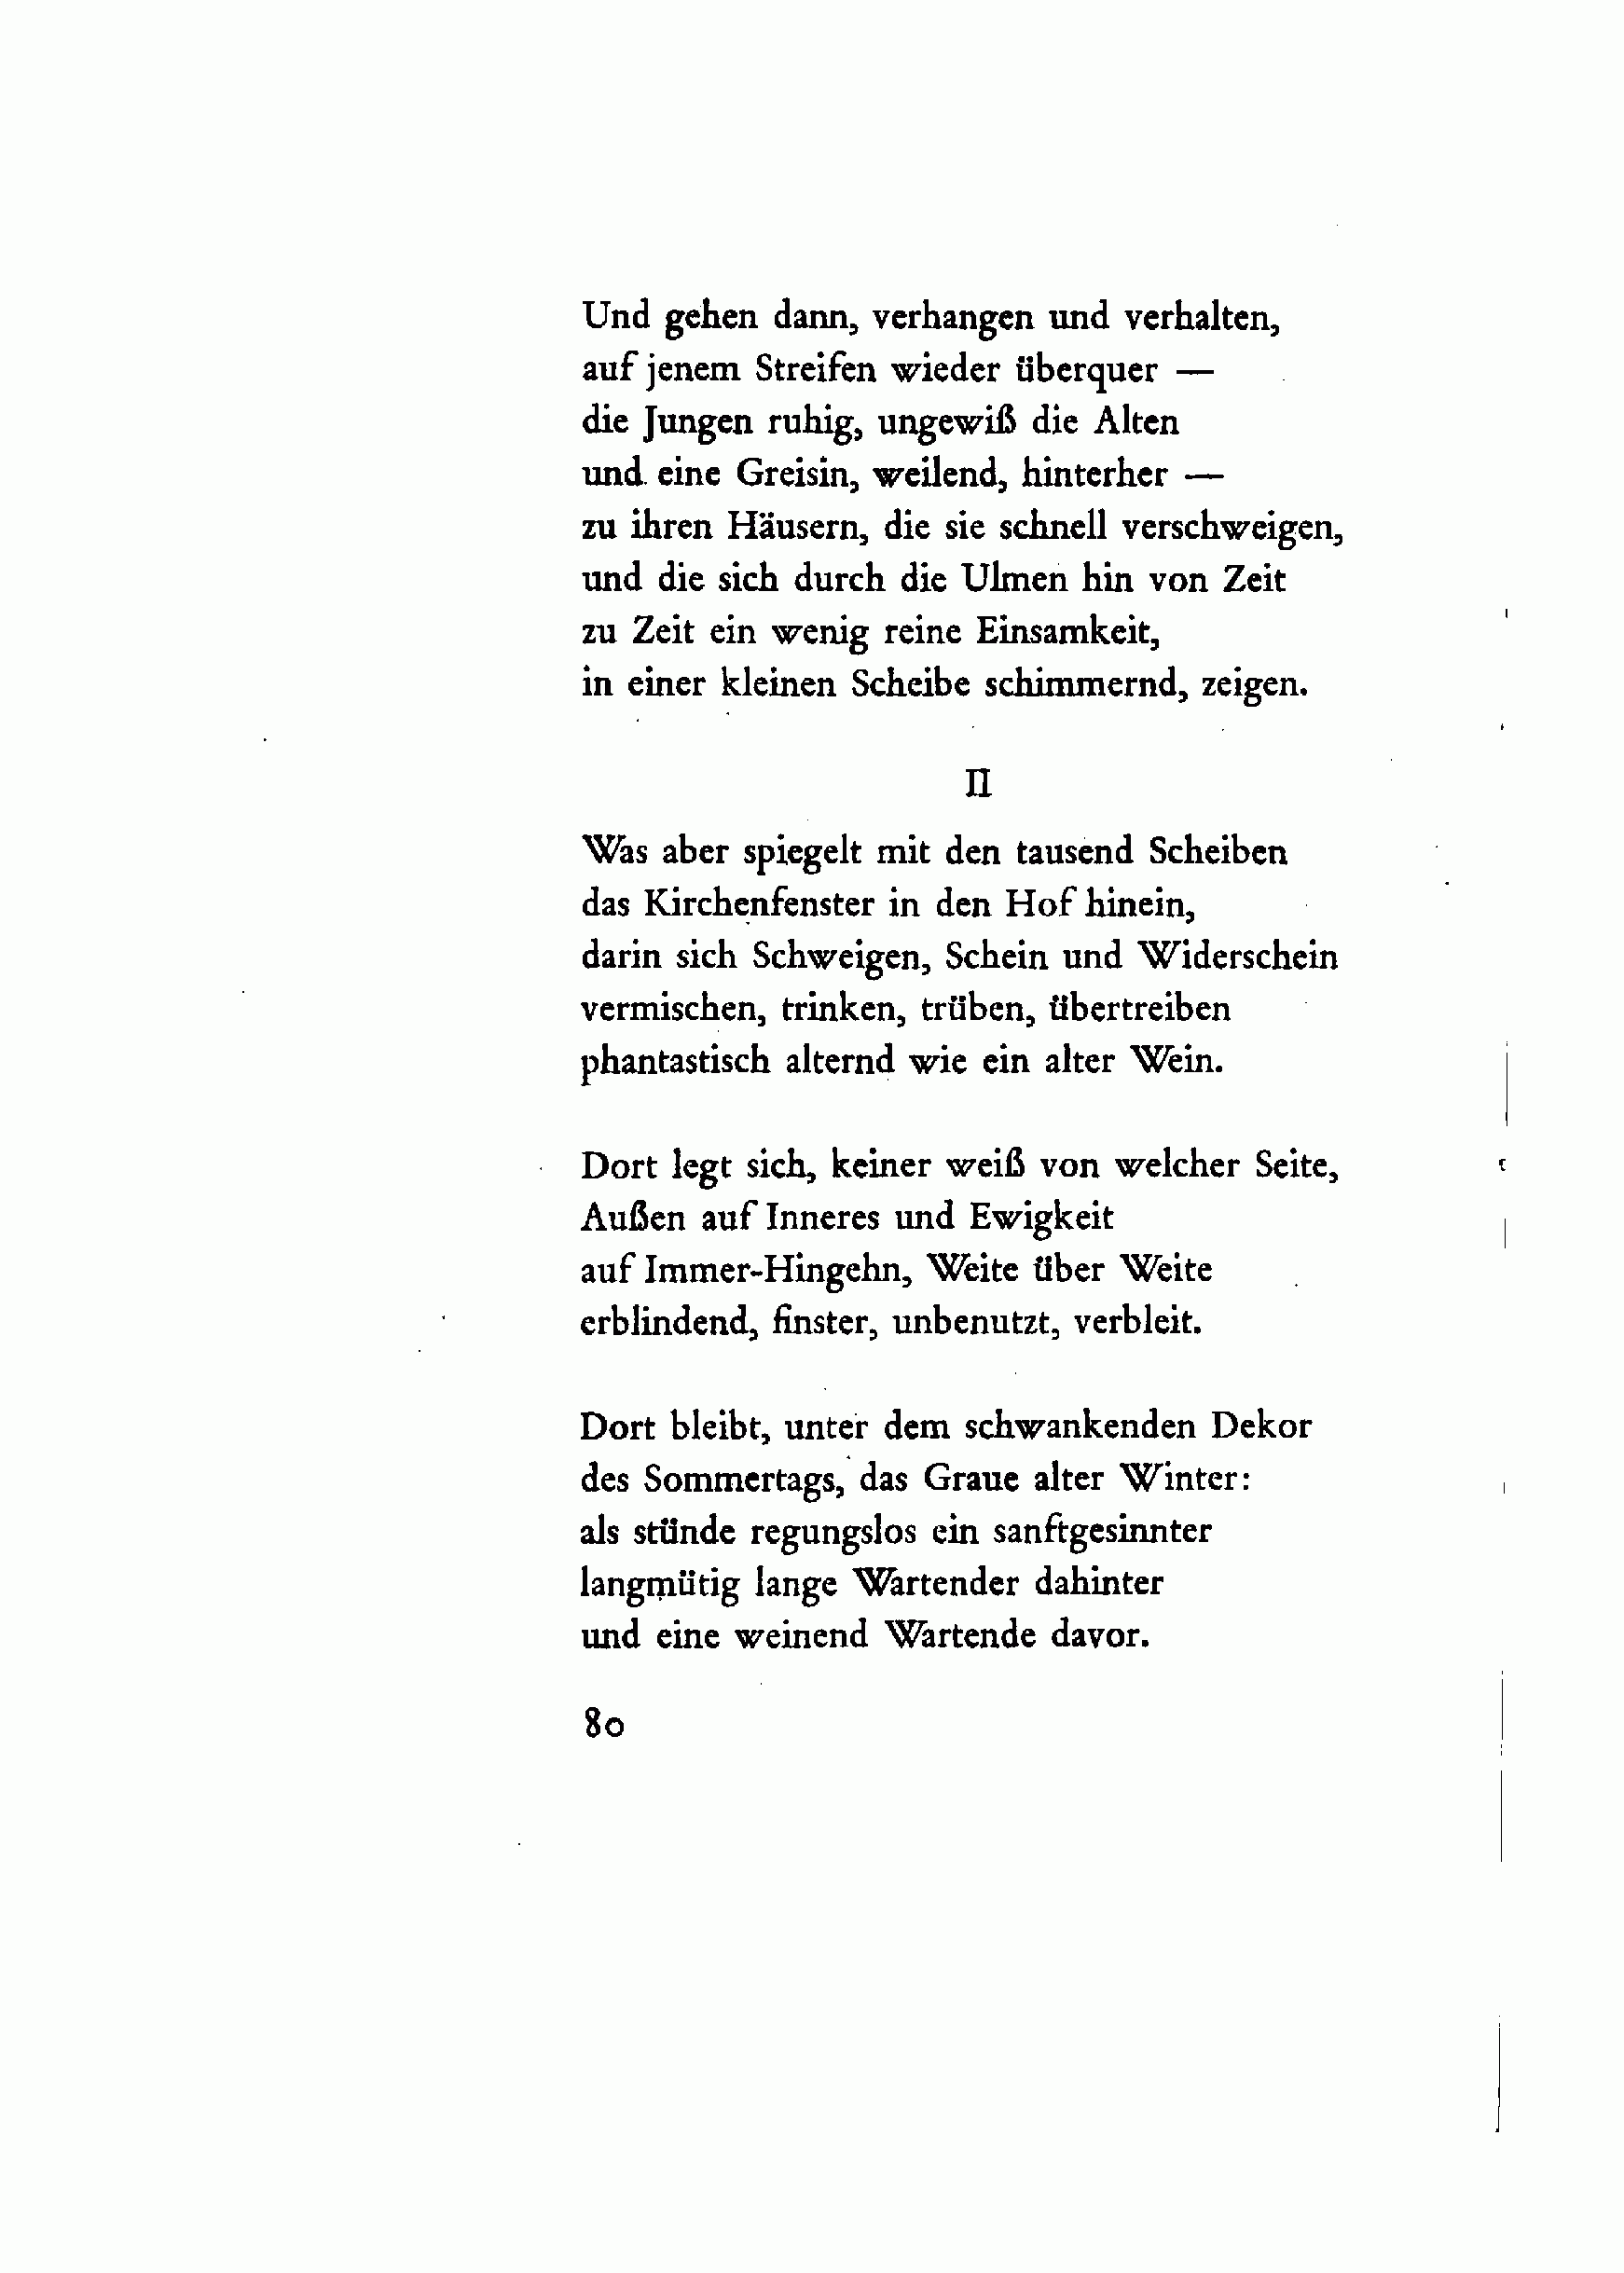 Rilke gedicht wenn du denkst es geht nicht mehr